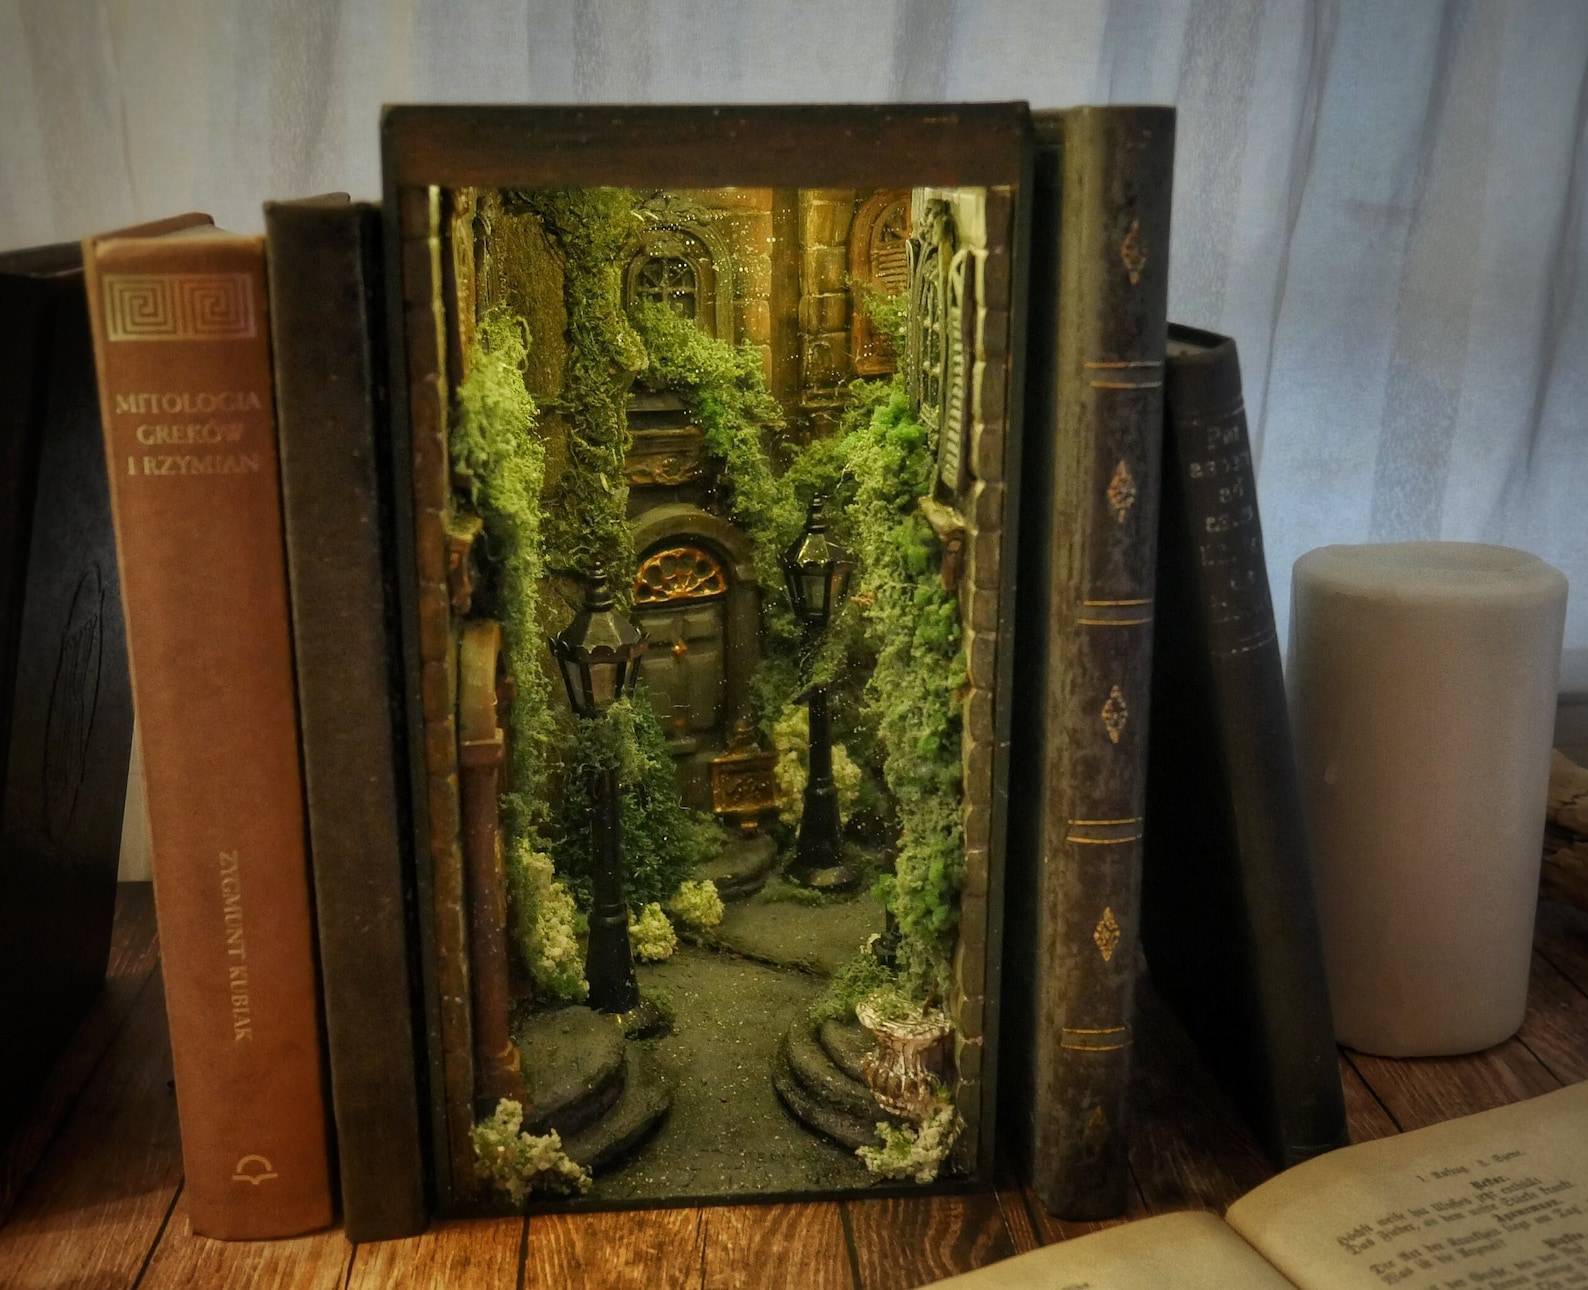 Library Book Nook, Book Shelf Insert, Booknook, Magic Diorama